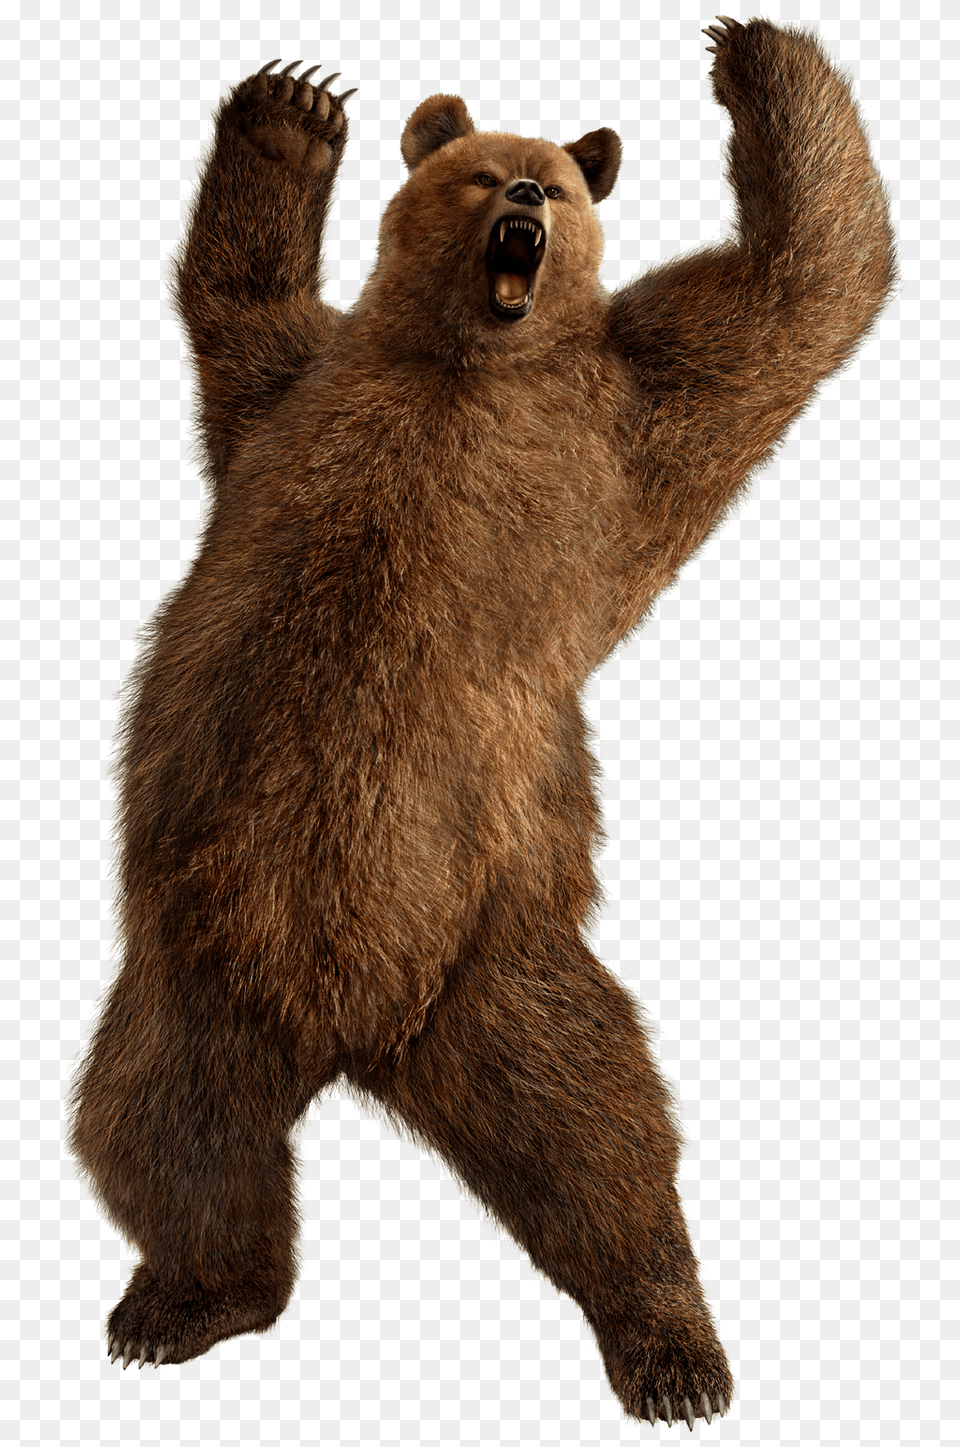 Fighting Bear, Animal, Mammal, Wildlife, Brown Bear Png Image